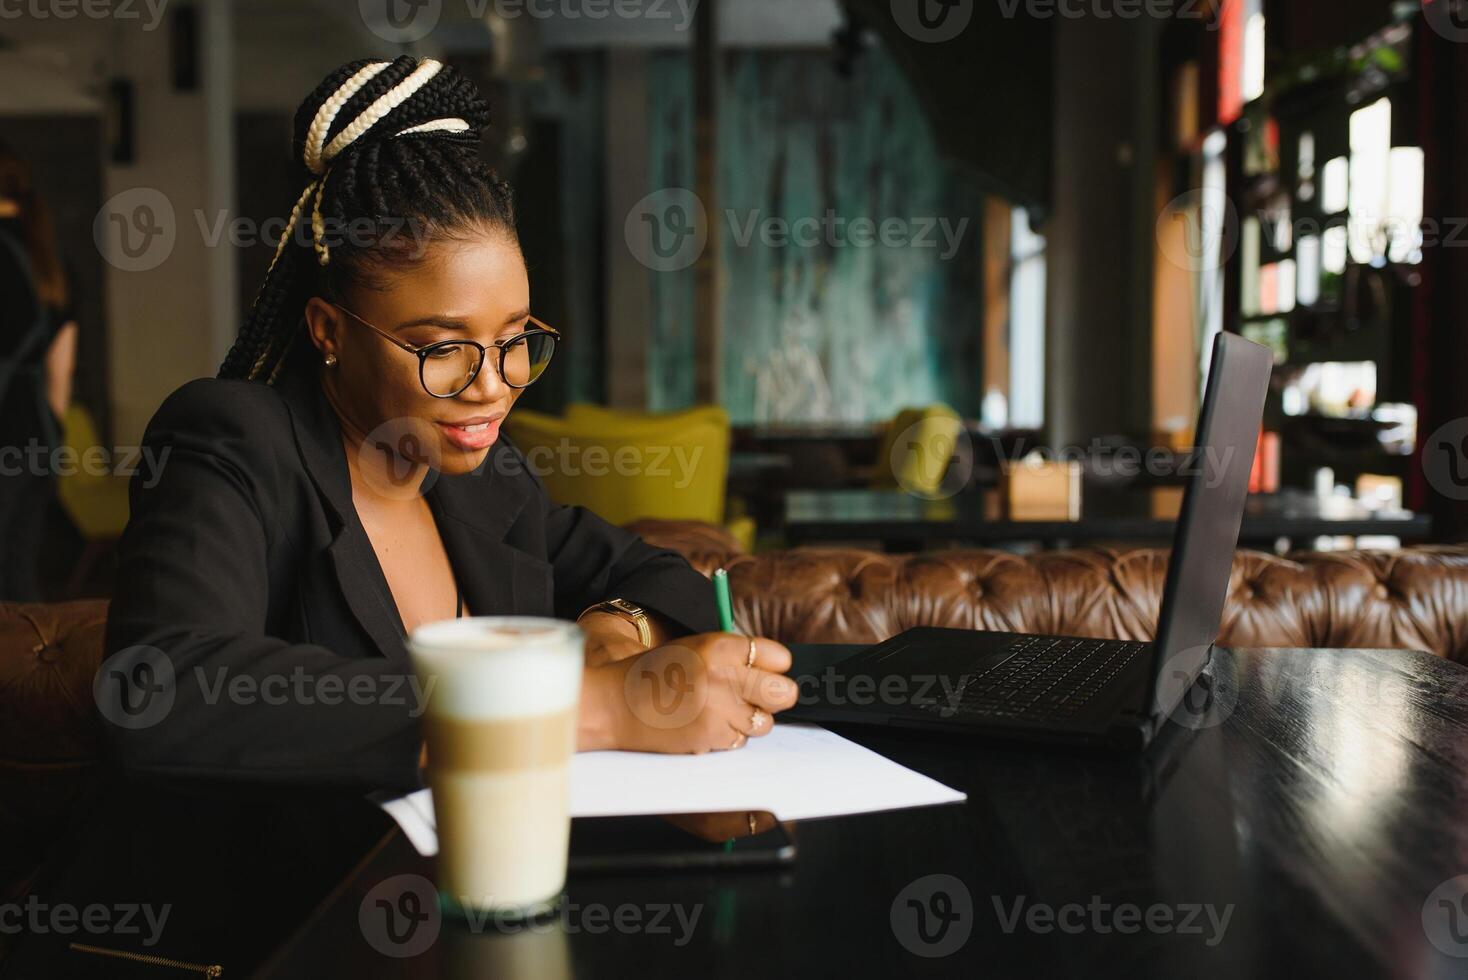 estudiante niña hojeada Internet, utilizando gratis Wifi a cafetería. africano persona de libre dedicación pensando en ideas para su Blog, utilizando ordenador portátil a trabajo colaborativo espacio, descansando mano en de madera mesa, mirando con inspirado sonrisa foto